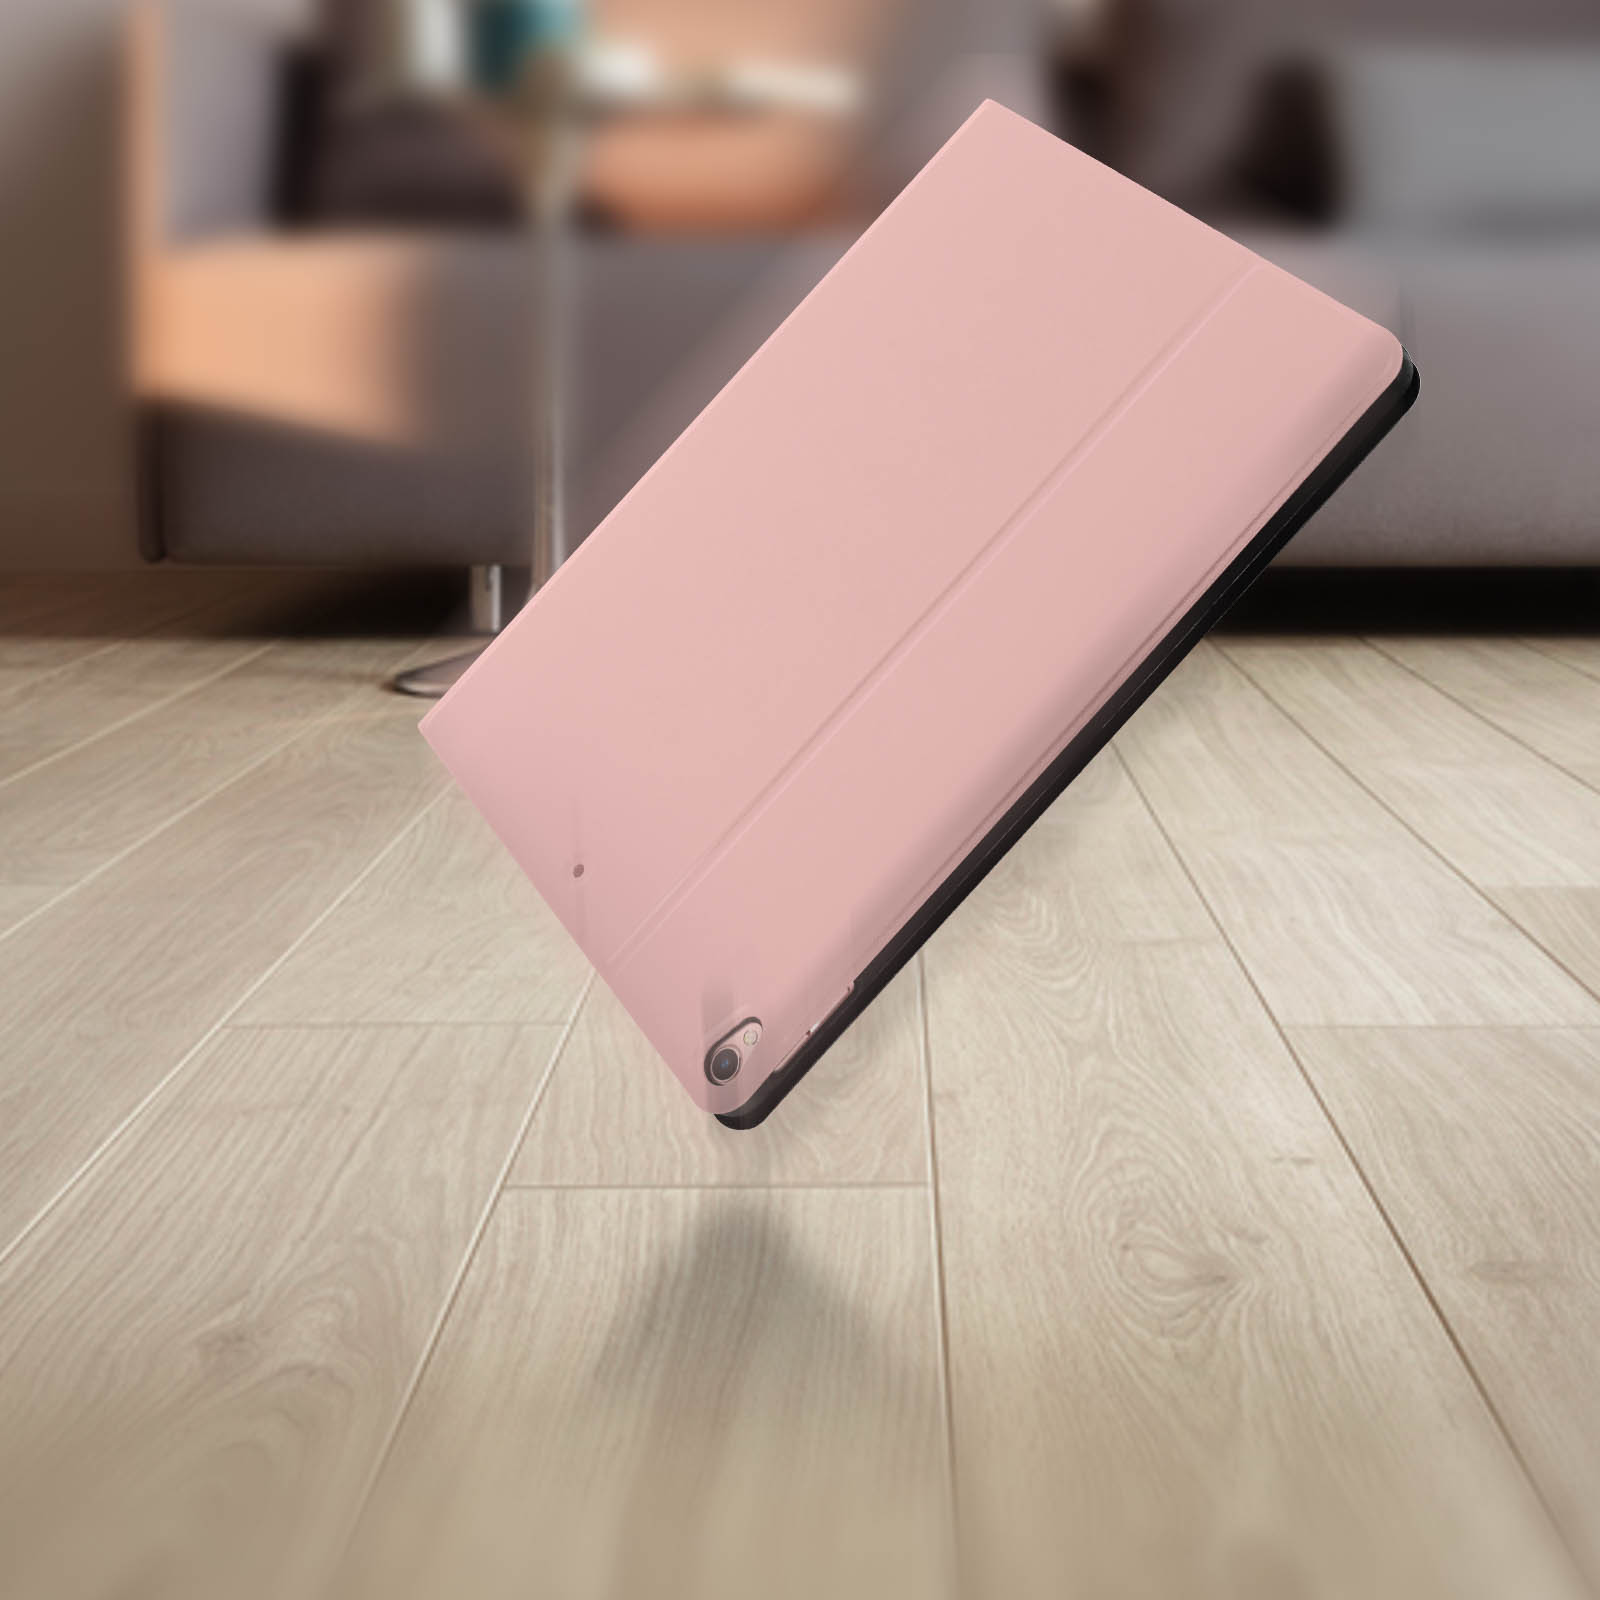 Coque iPad pro/Air 2019 avec rabat de protection - 3 couleurs - promotion